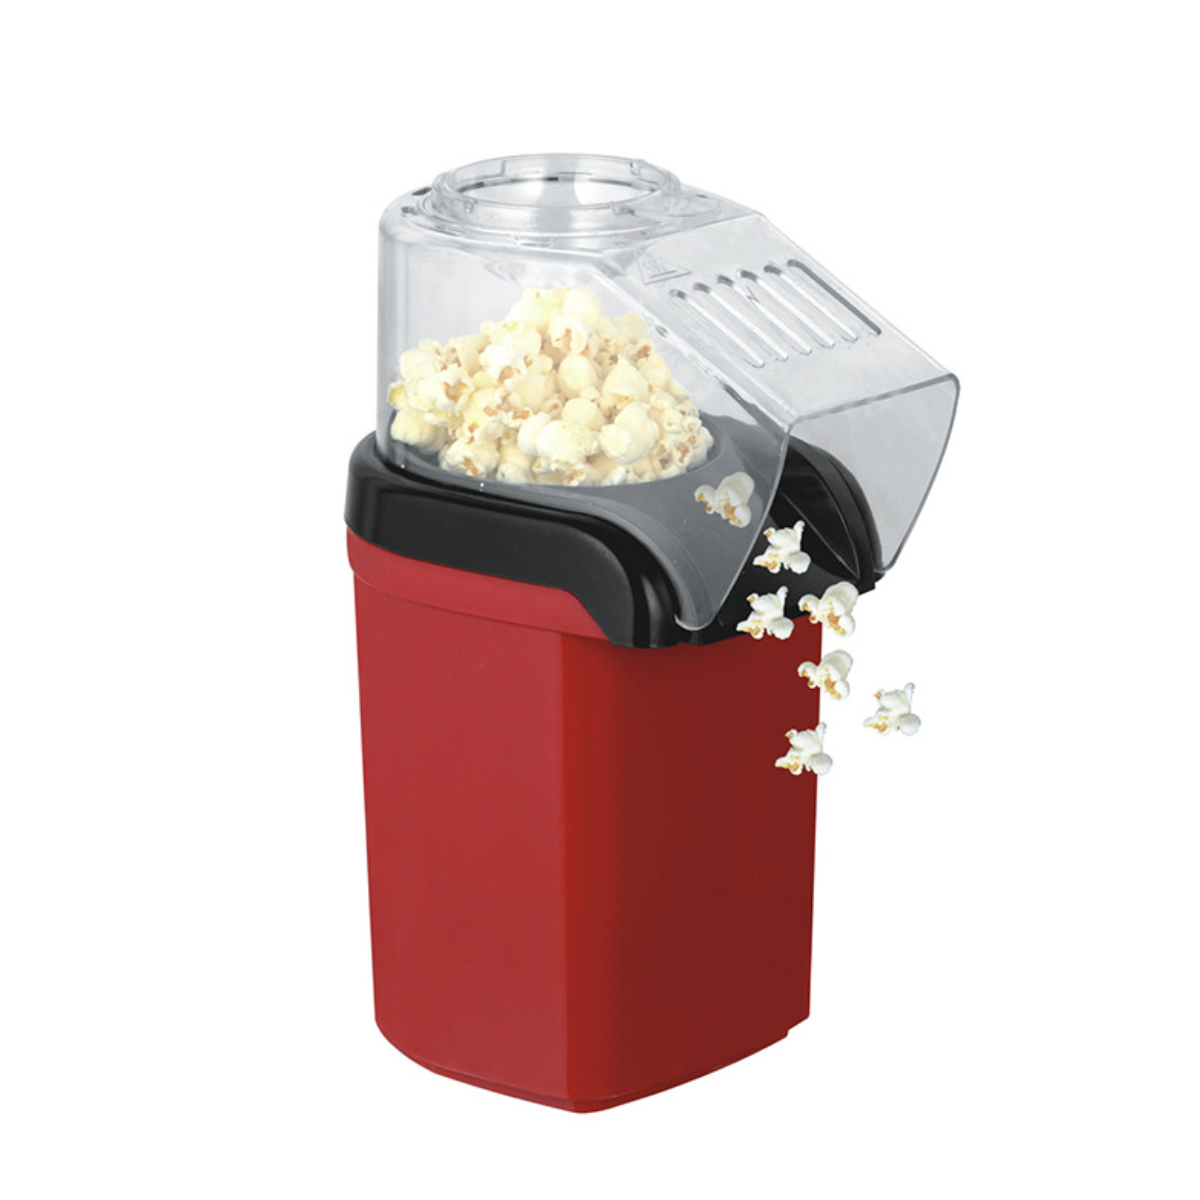 mit für Zuhause Elektrische Popcorn-Maschine UWOT Mini-Maispuffmaschine - Popcornmaschine Gebläse